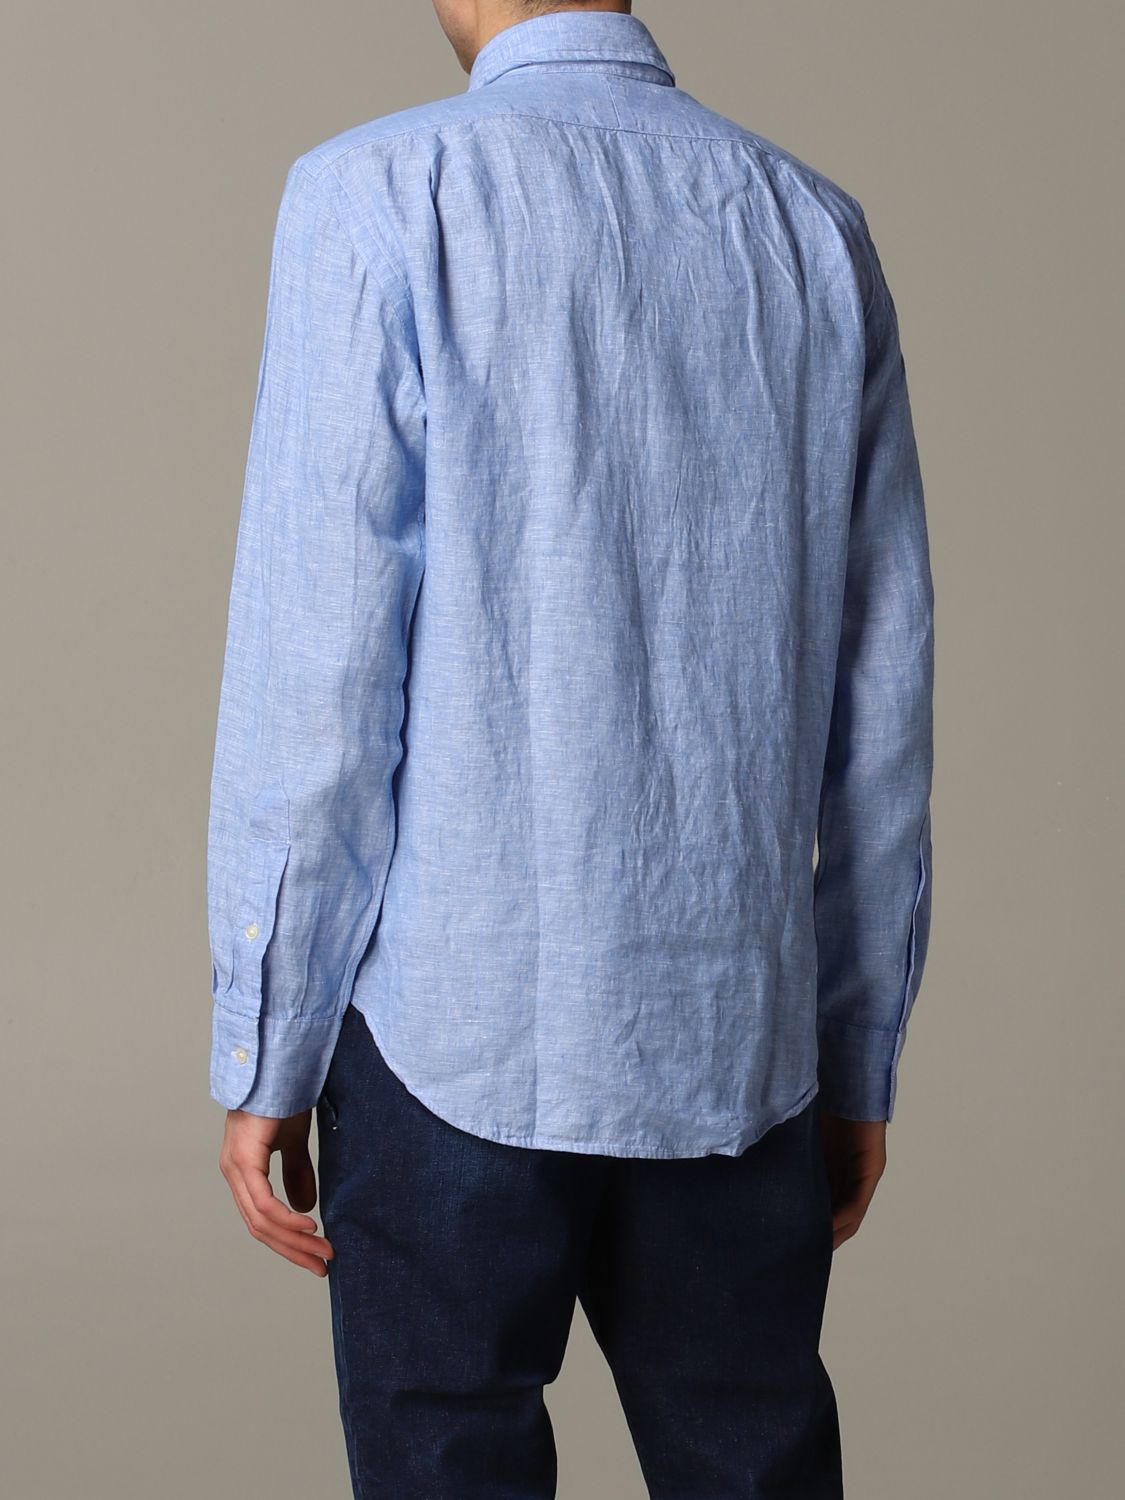 Shirt Polo Ralph Lauren: Polo Ralph Lauren shirt for men gnawed blue 3